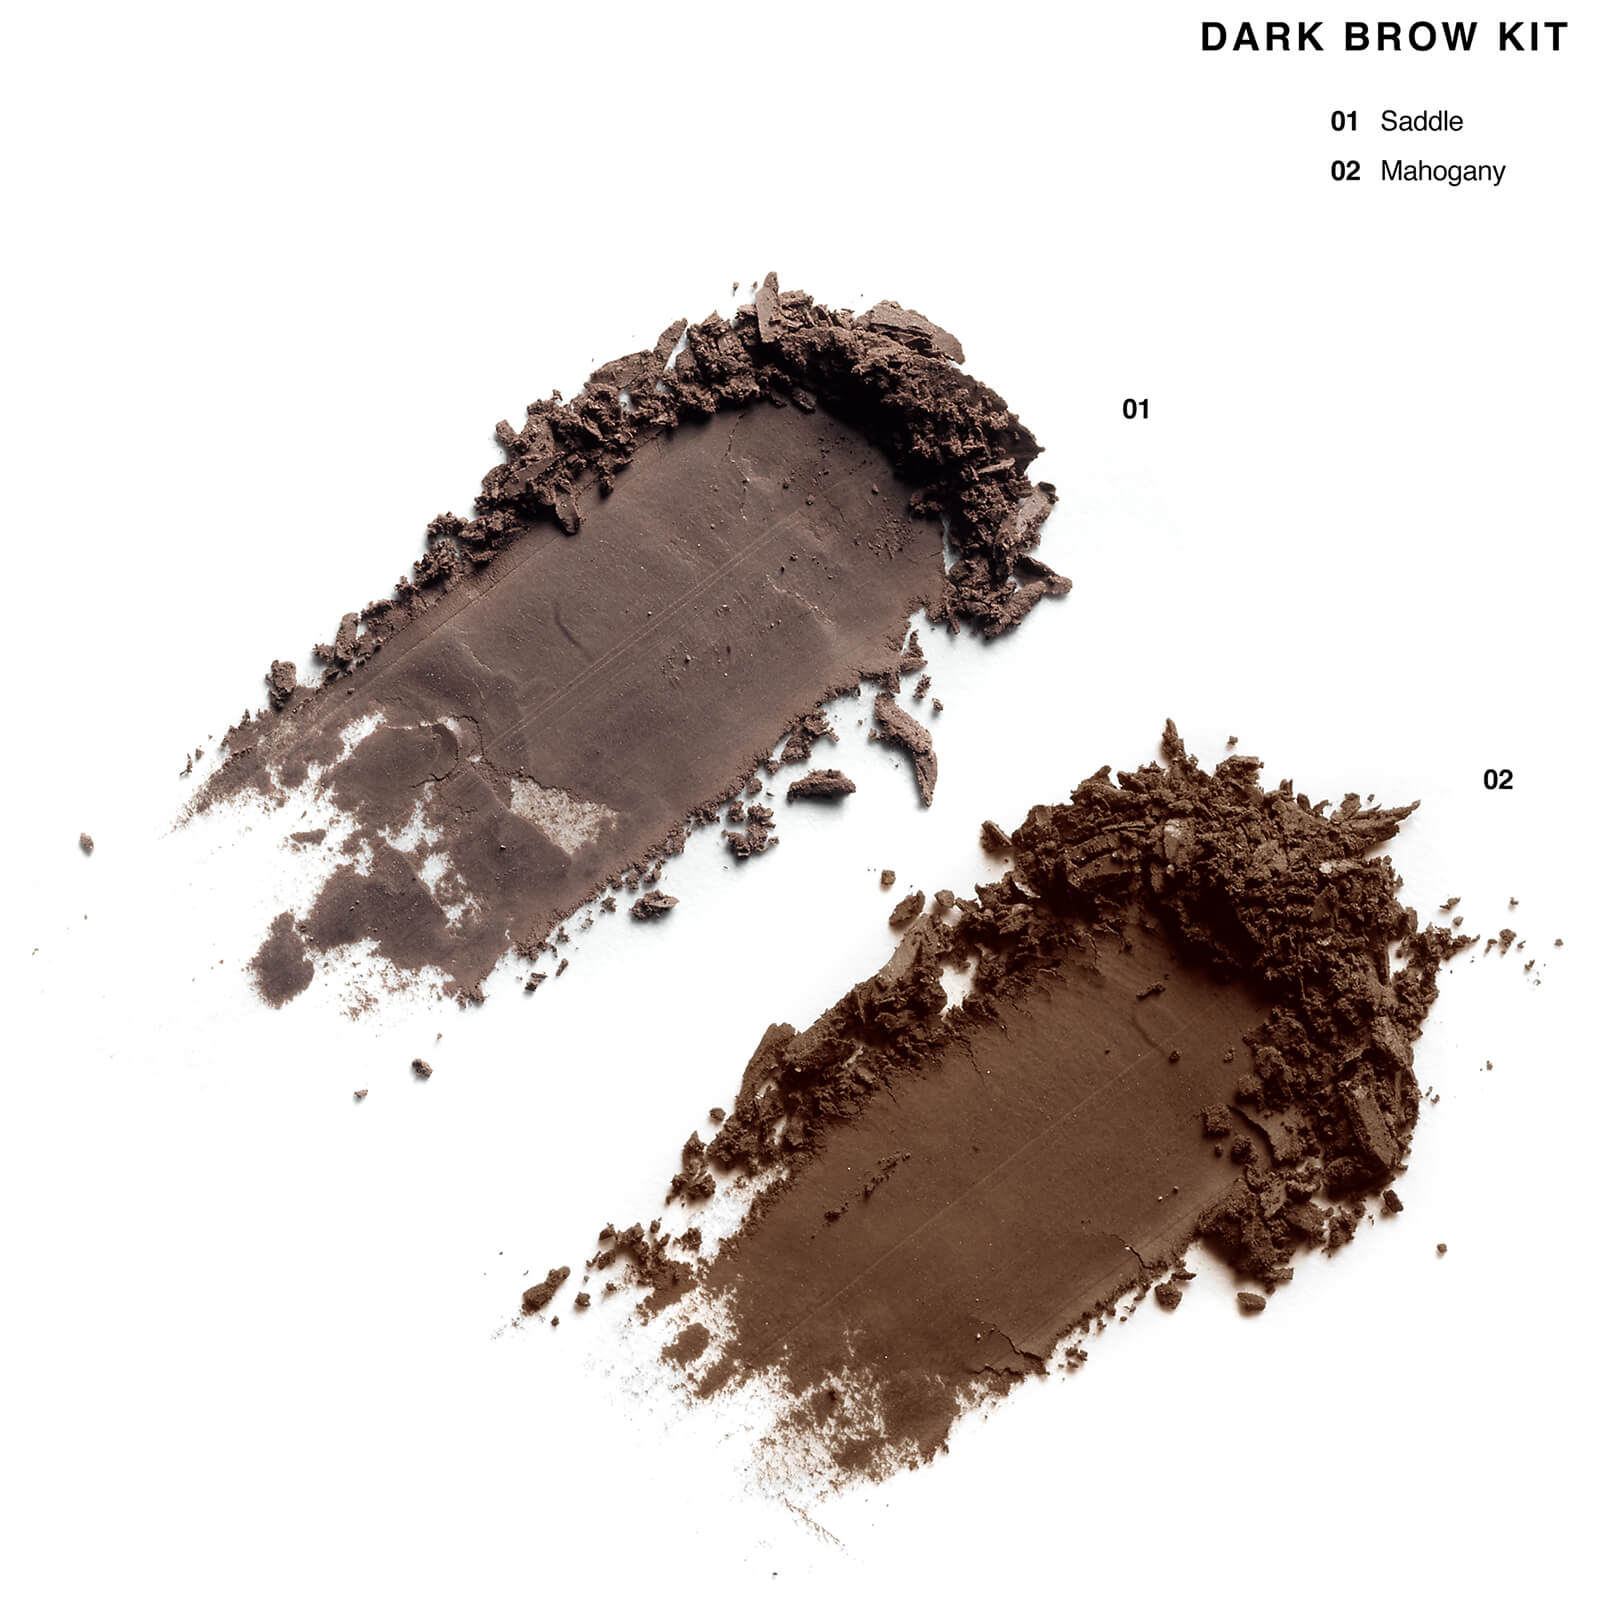 Dark brow kit